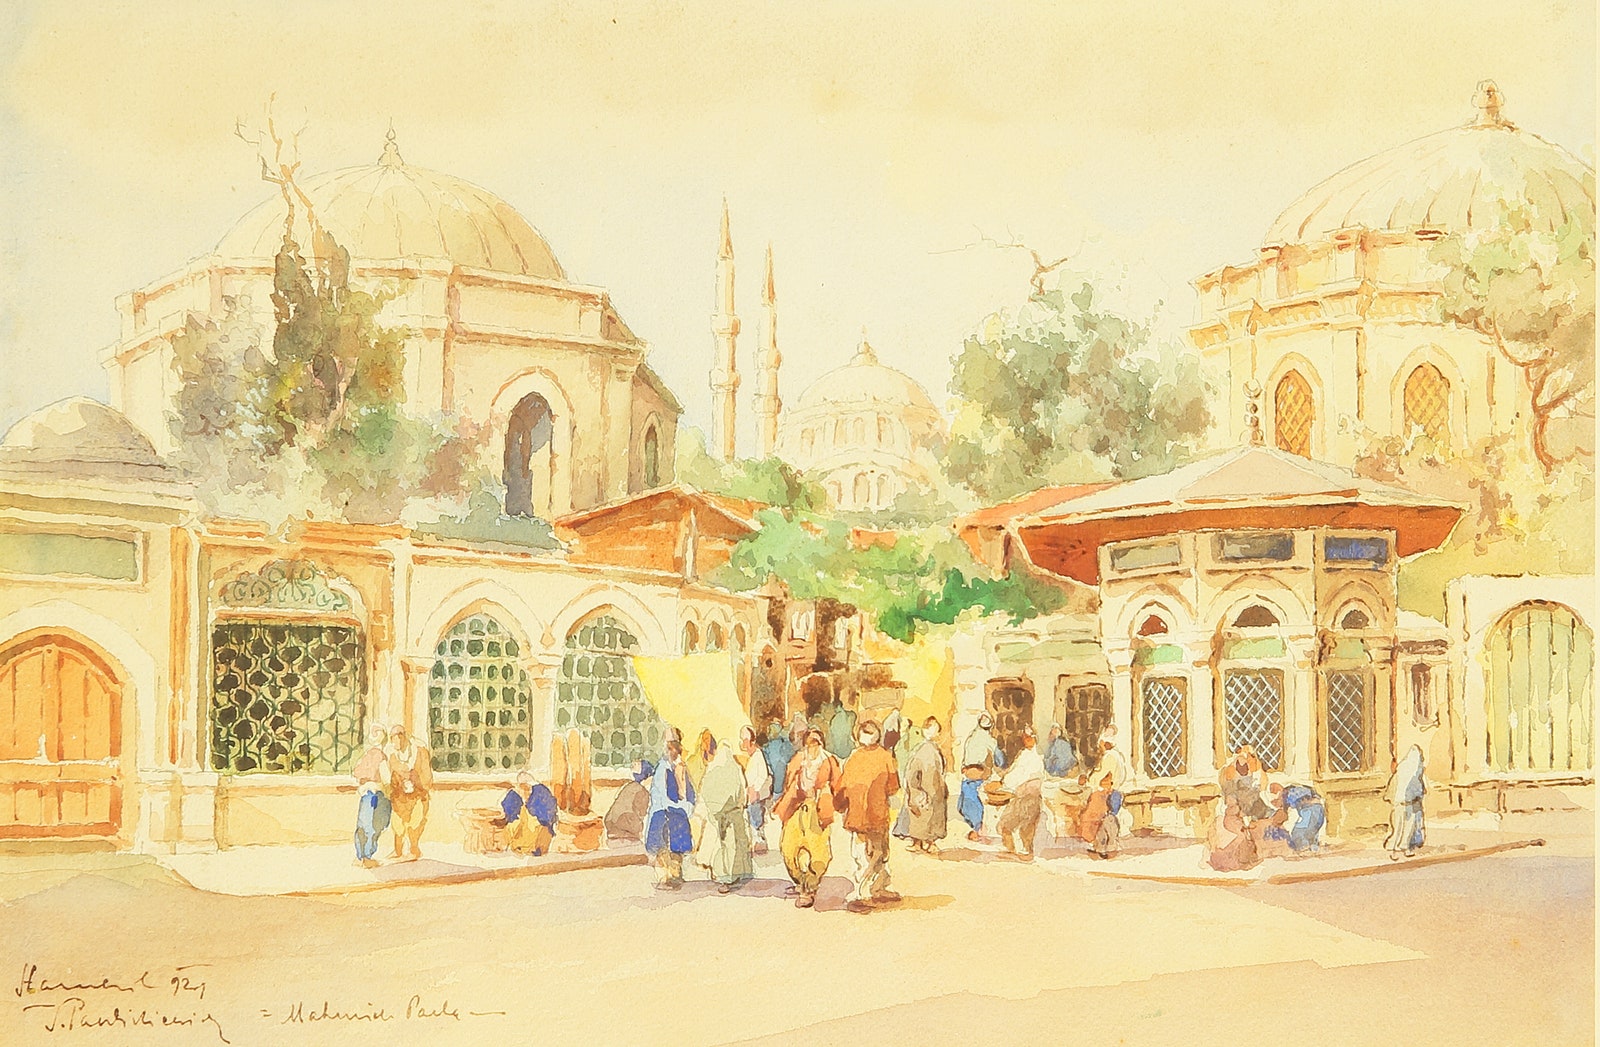 Й. Павликевич. Улица в Константинополе 1921.